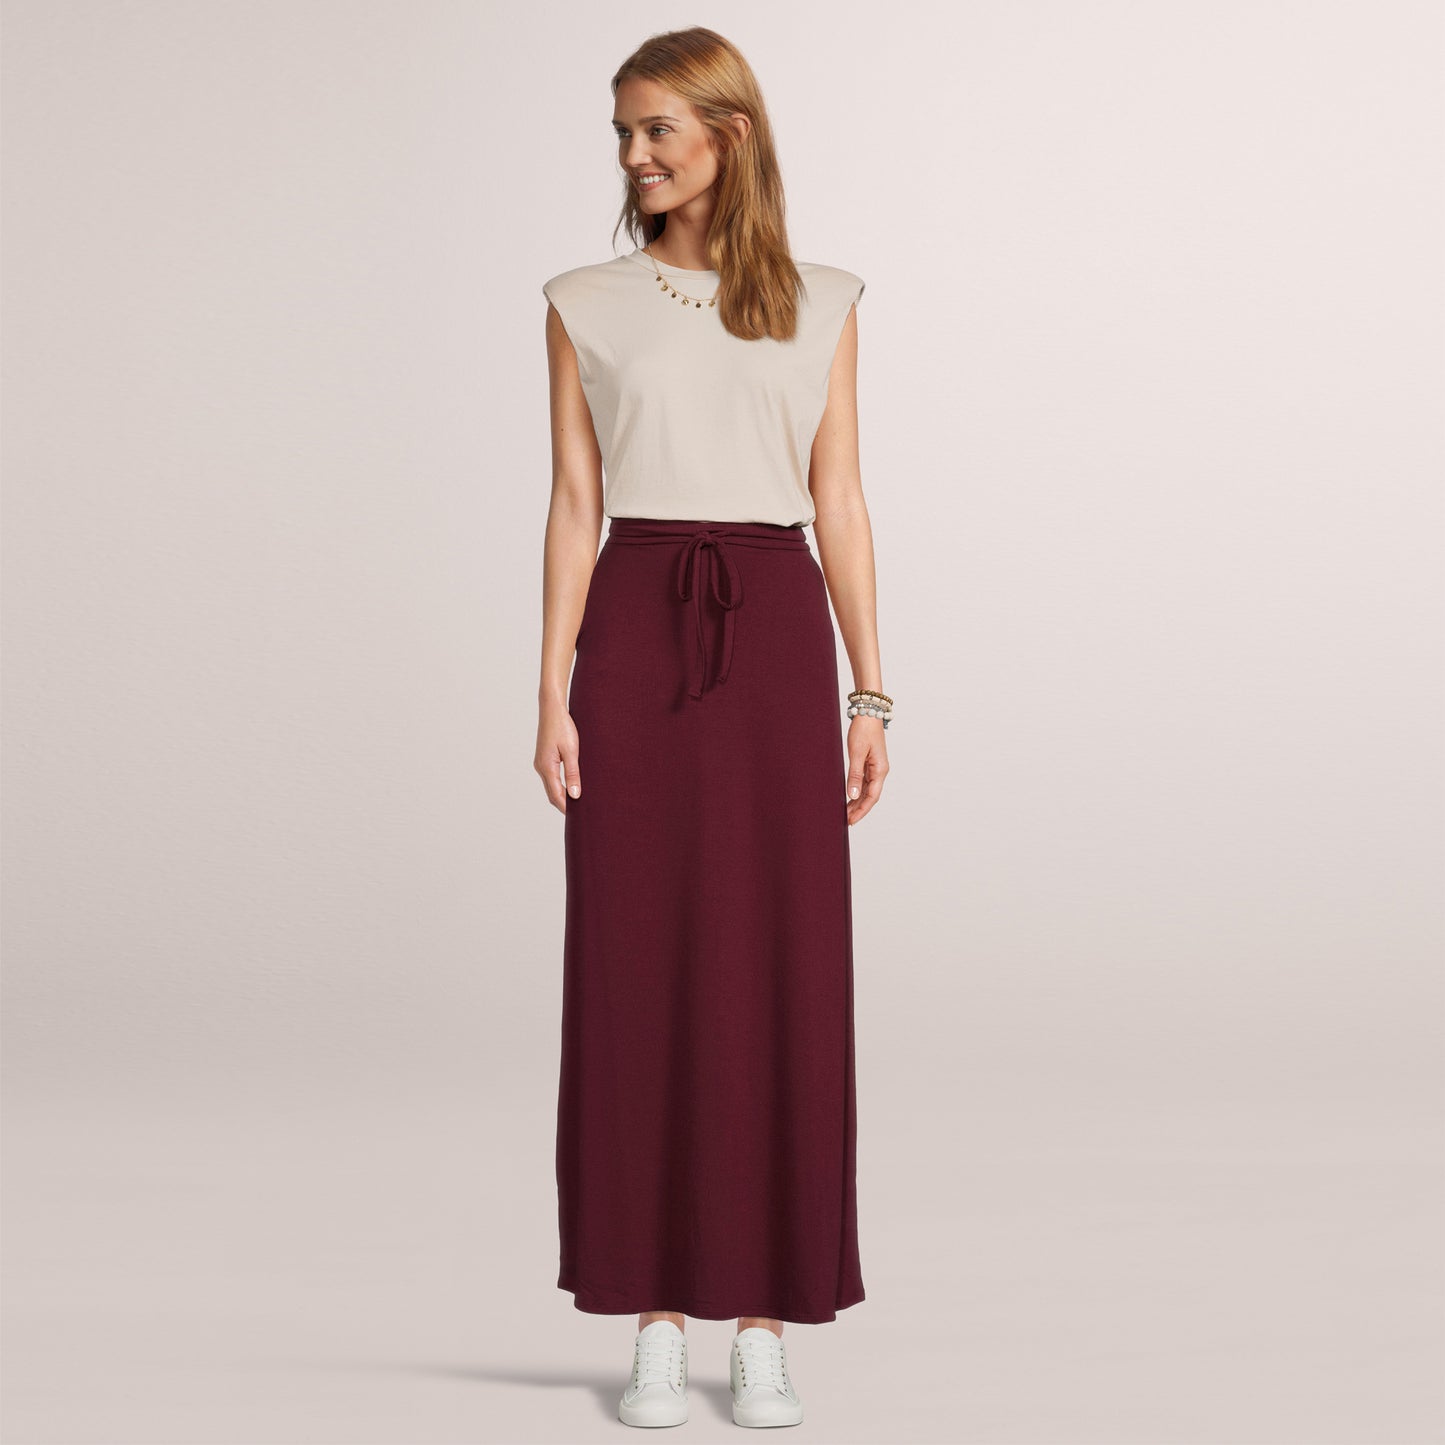 Women's Maxi Long Skirt Drawstring Waist Pockets Soft Comfort Fabric Burgundy